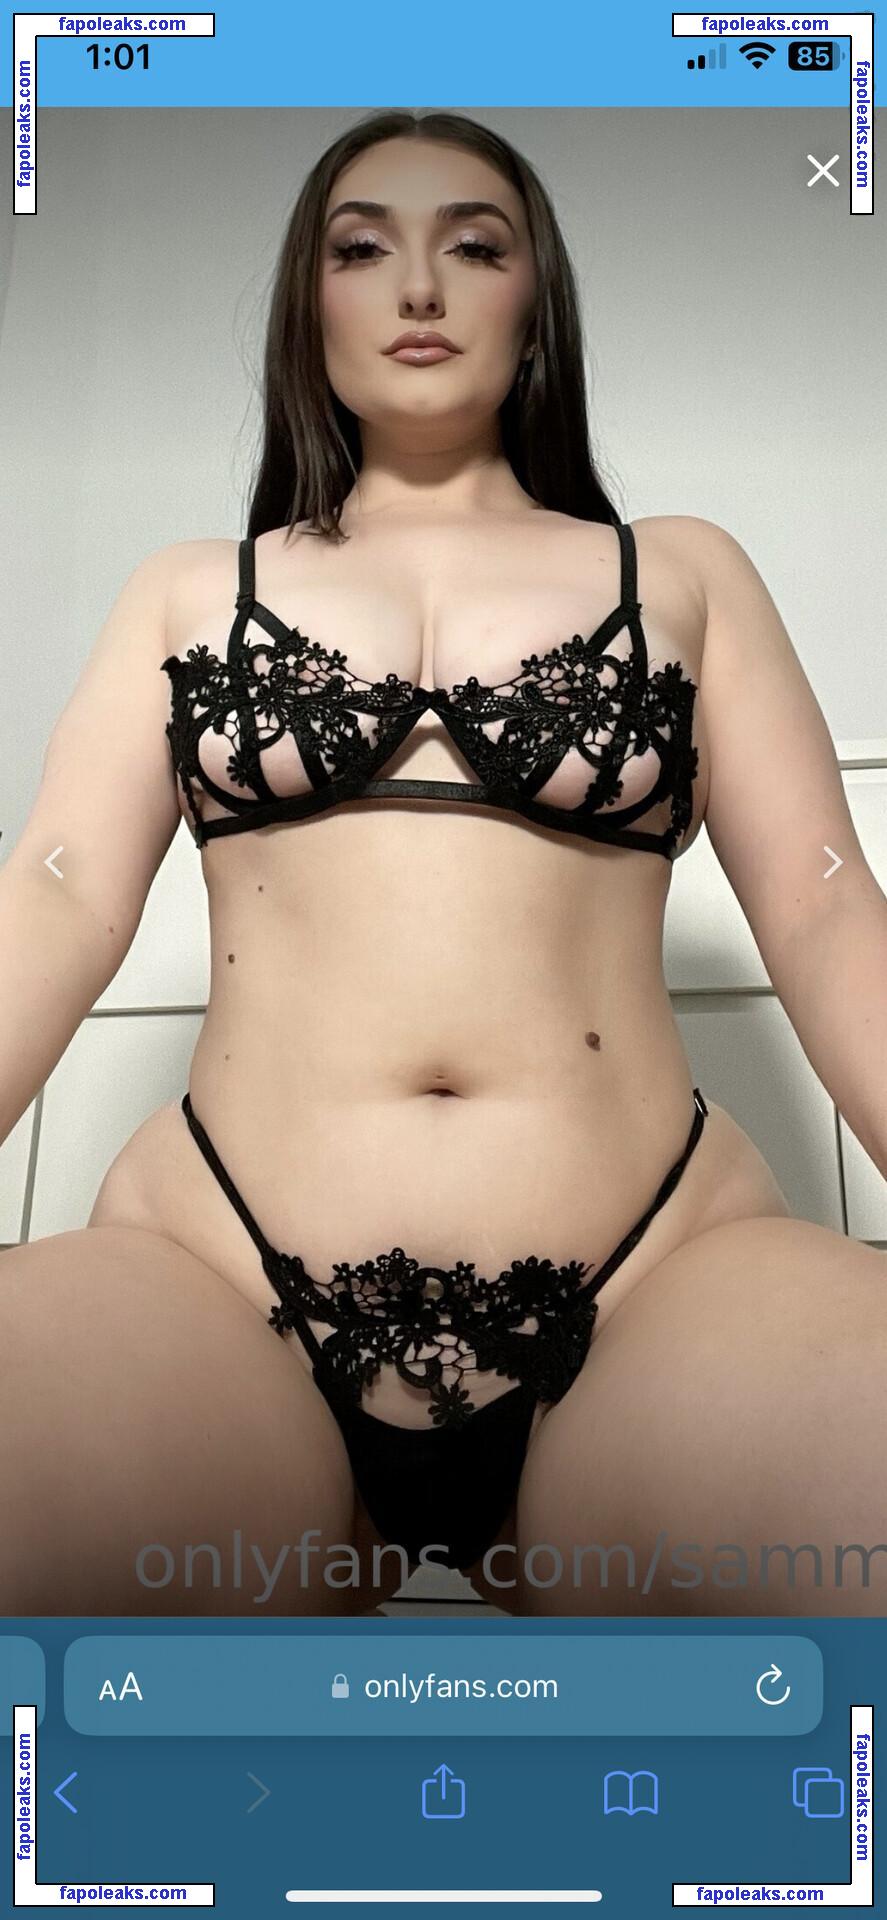 Samantha Warren / sammiew / sammiewarrenx nude photo #0003 from OnlyFans